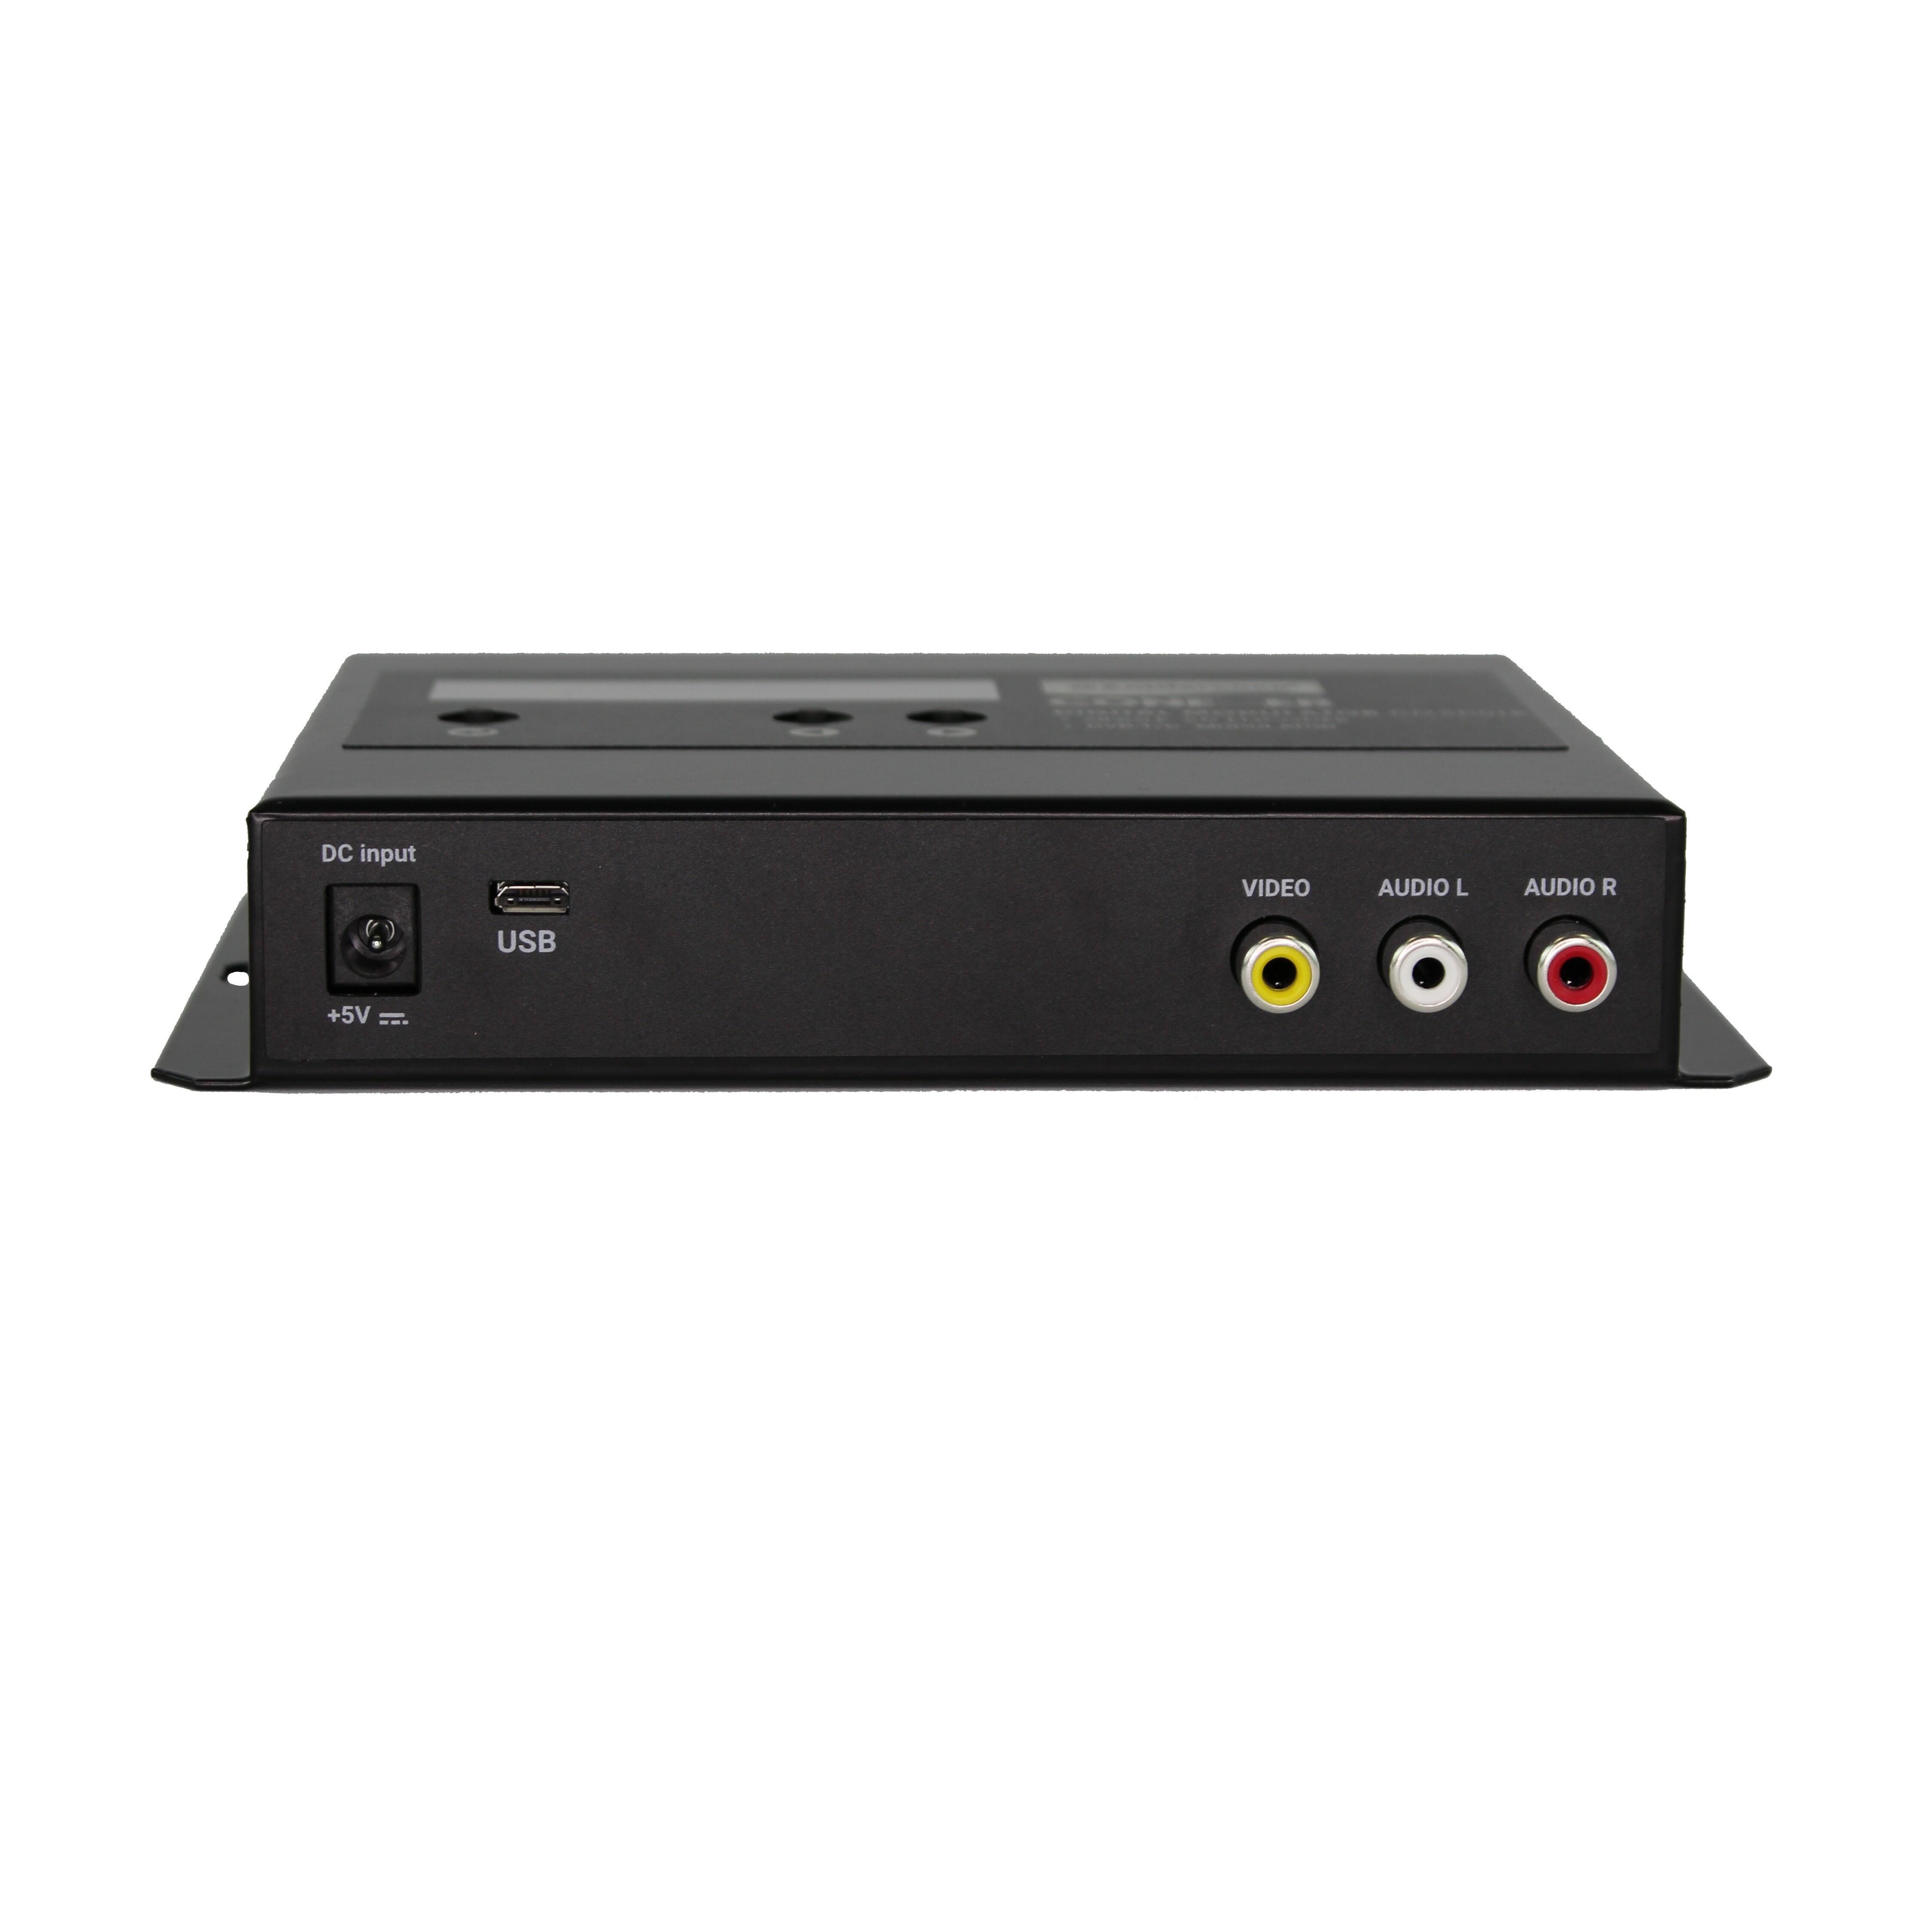 DMSD01B – Conexer single AV DVB-T/C modulator